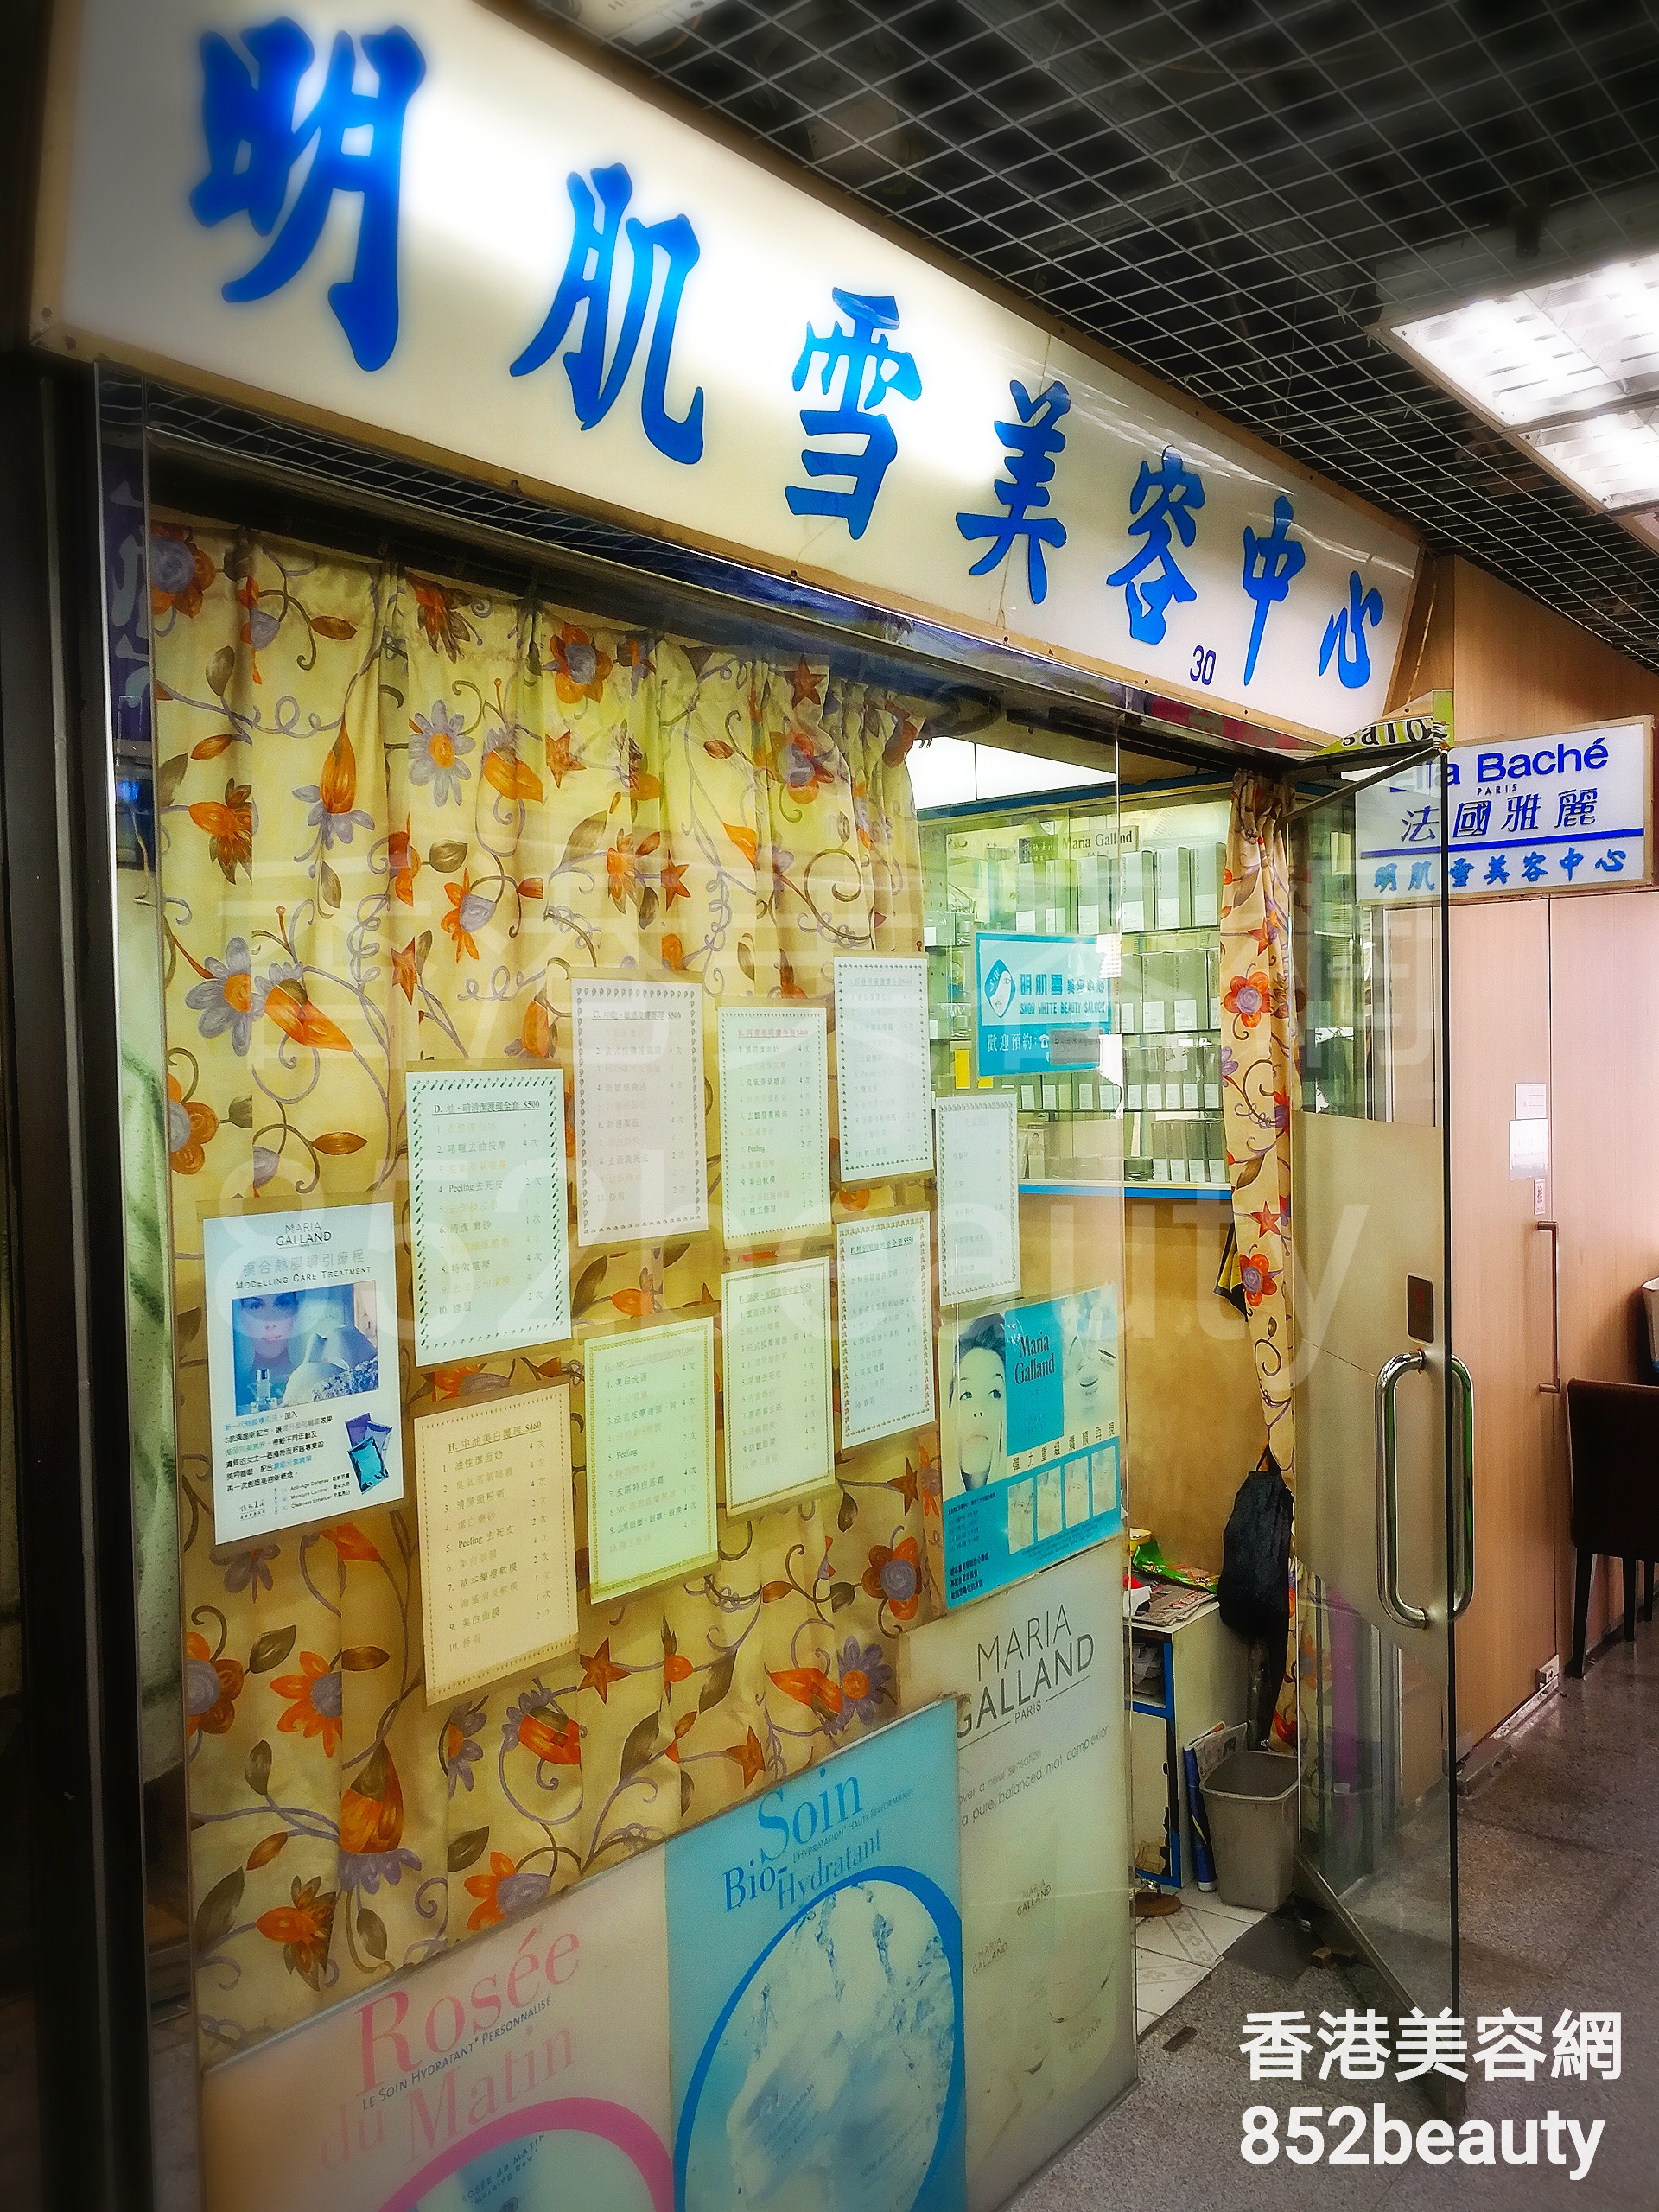 香港美容網 Hong Kong Beauty Salon 美容院 / 美容師: 明肌雪美容中心